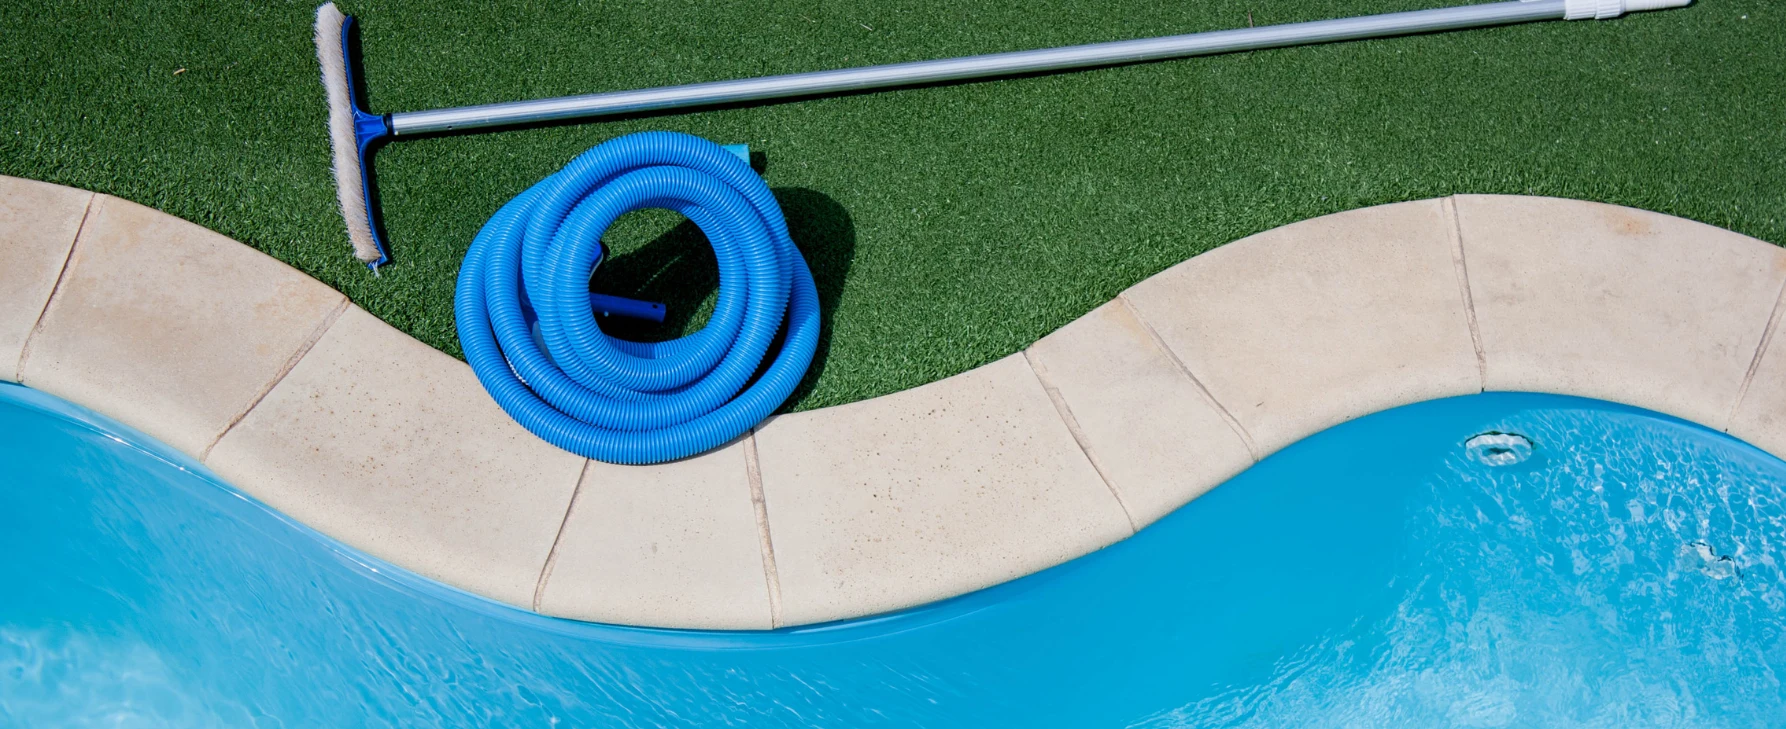 Mantenemos tu piscina impecable, calidad del agua y sistema de filtrado, asegurando un espacio limpio.